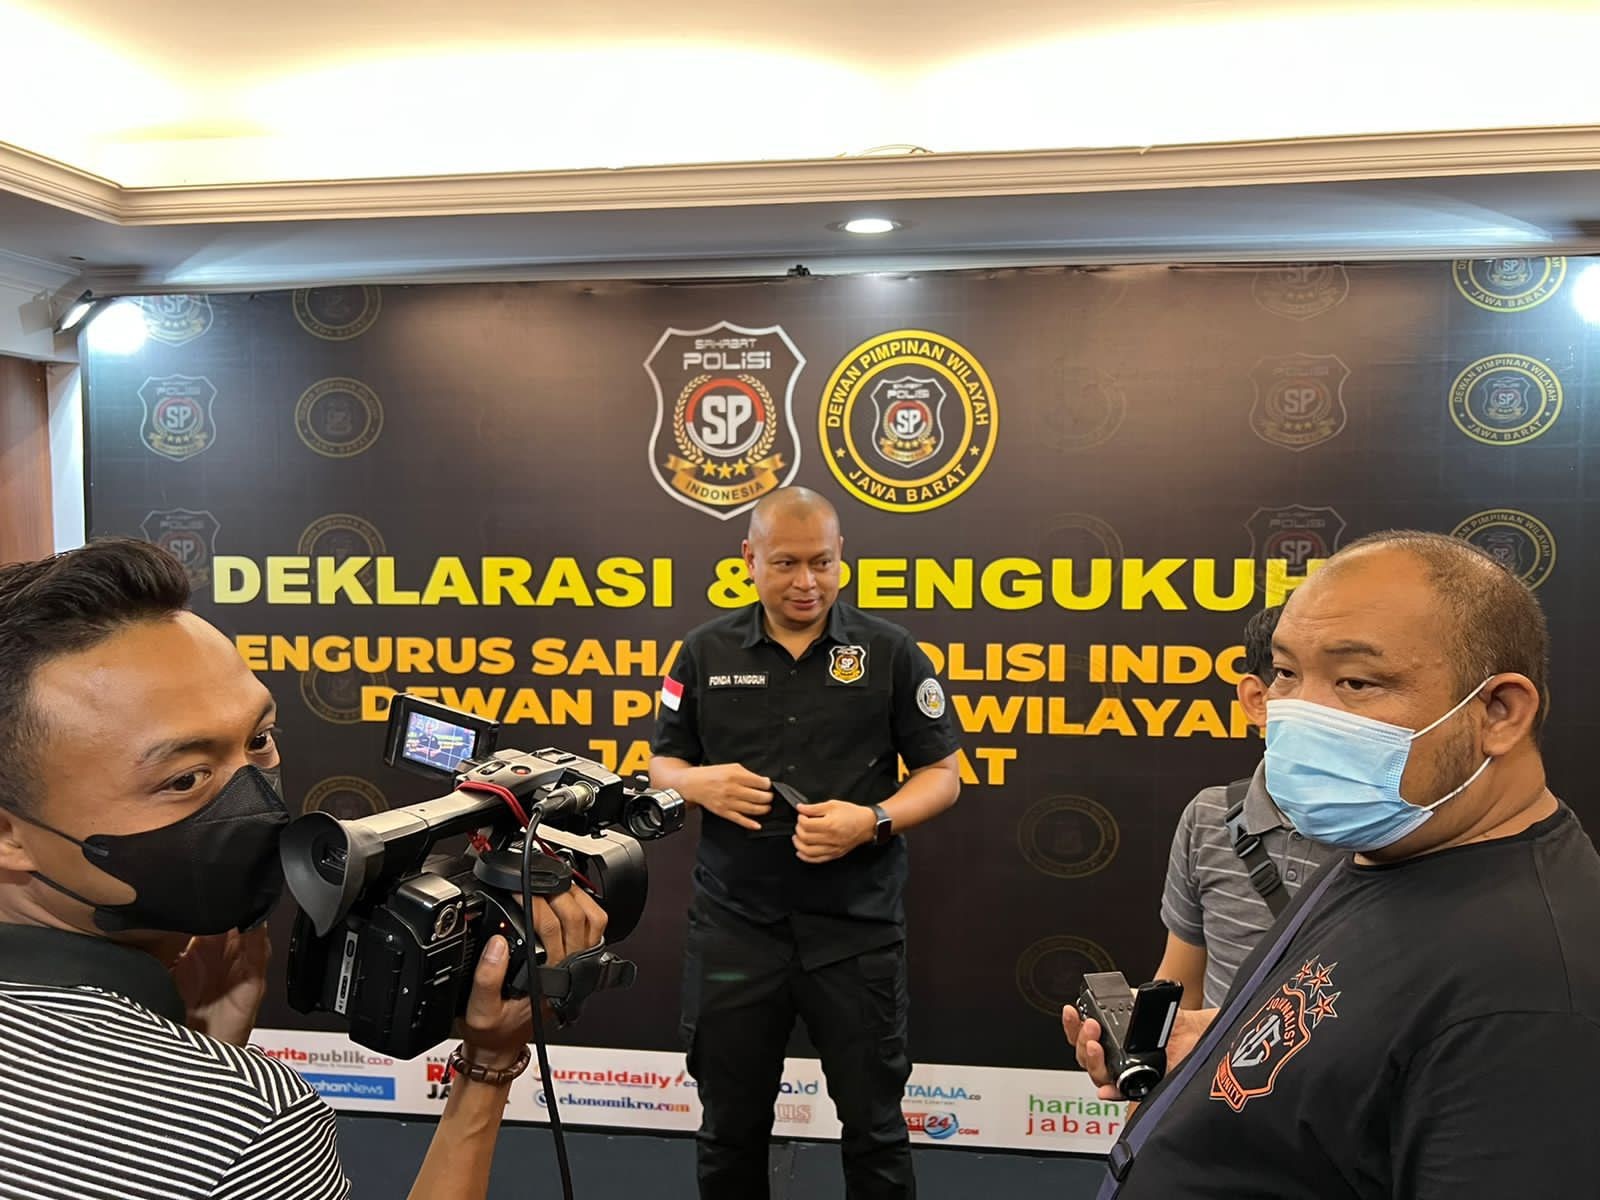 Kasus Baku Tembak di Kediaman Kadiv Propam, Sahabat Polisi Indonesia: IPW Jangan Memperkeruh Suasana!